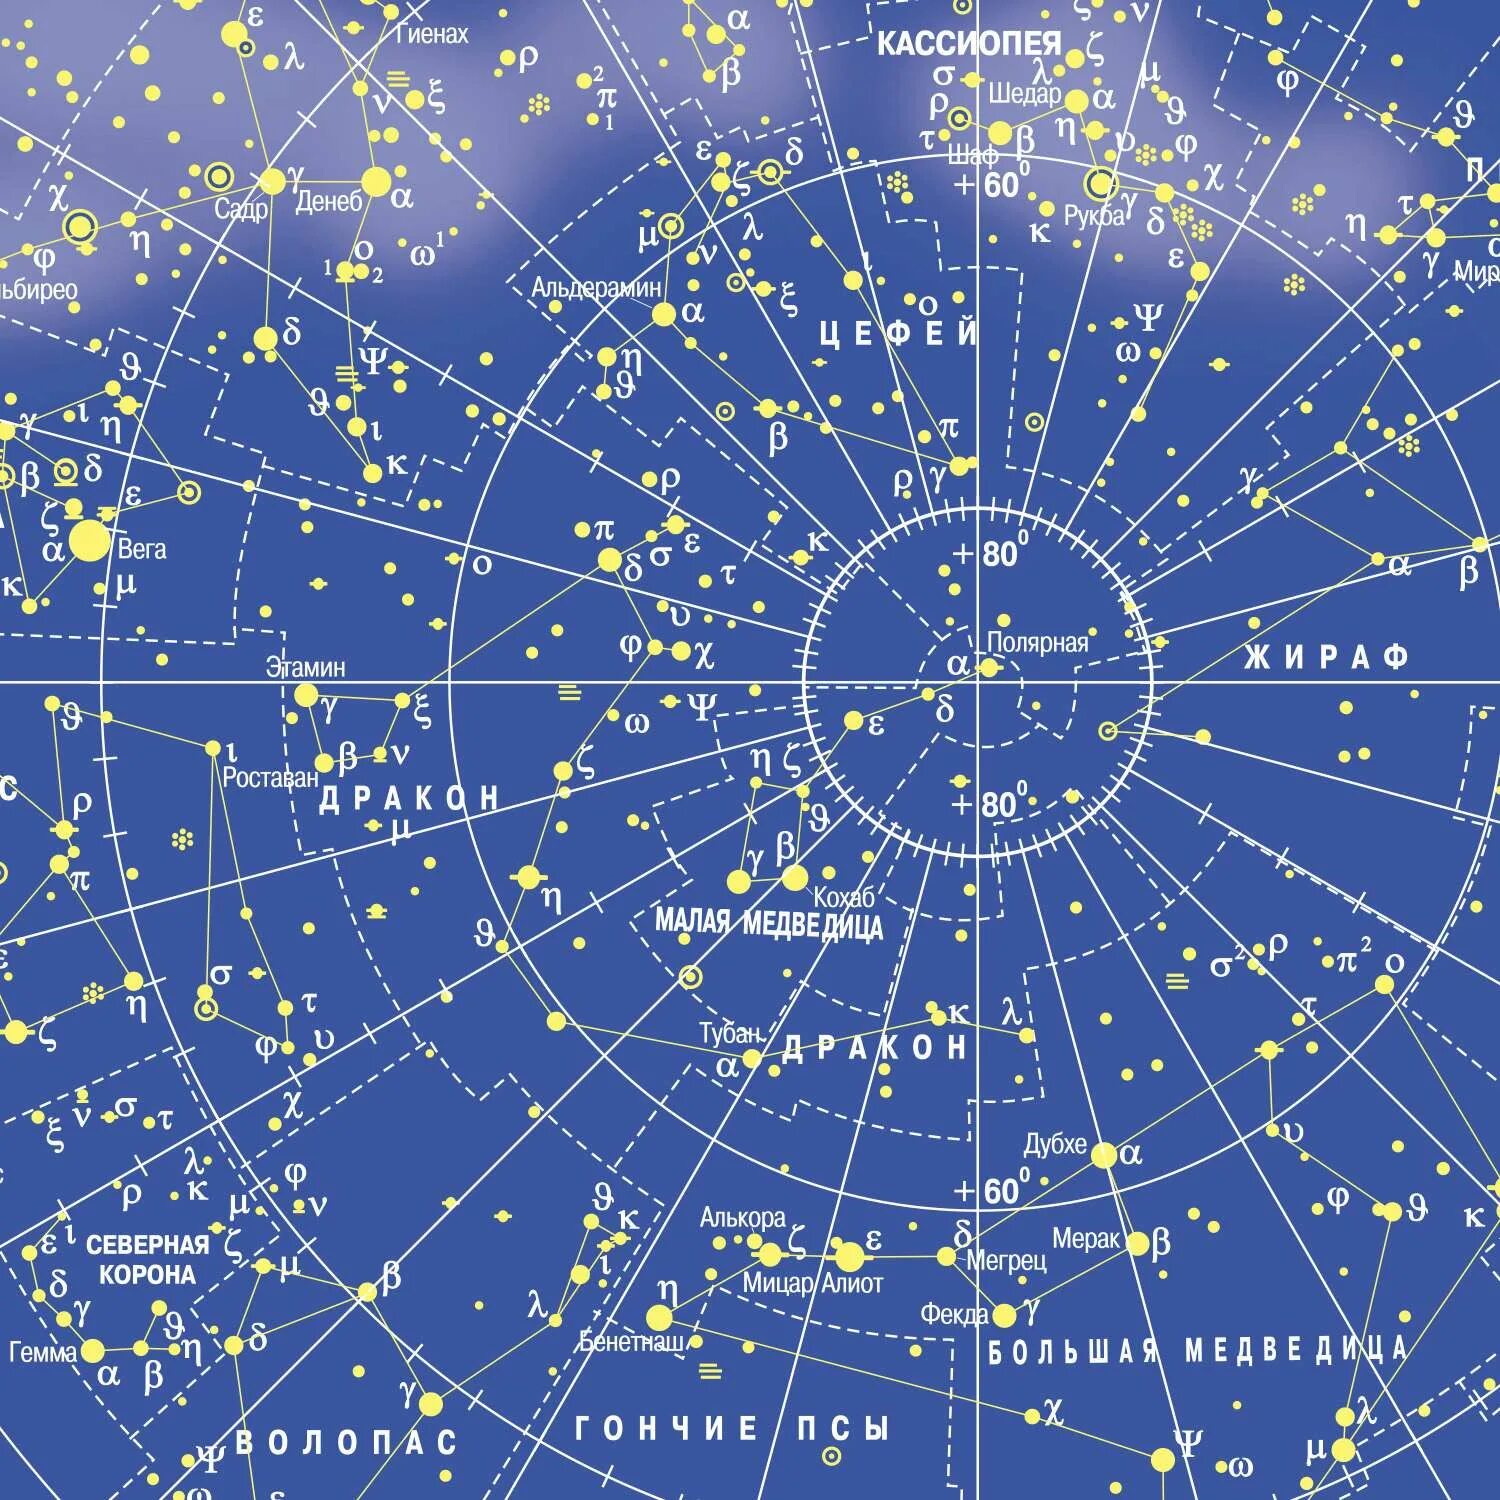 Интерактивные звездные карты. Карта звездного неба. Карта созвездий звездного неба. Звёздная карта неба. Звёздная карта звёздного неба.